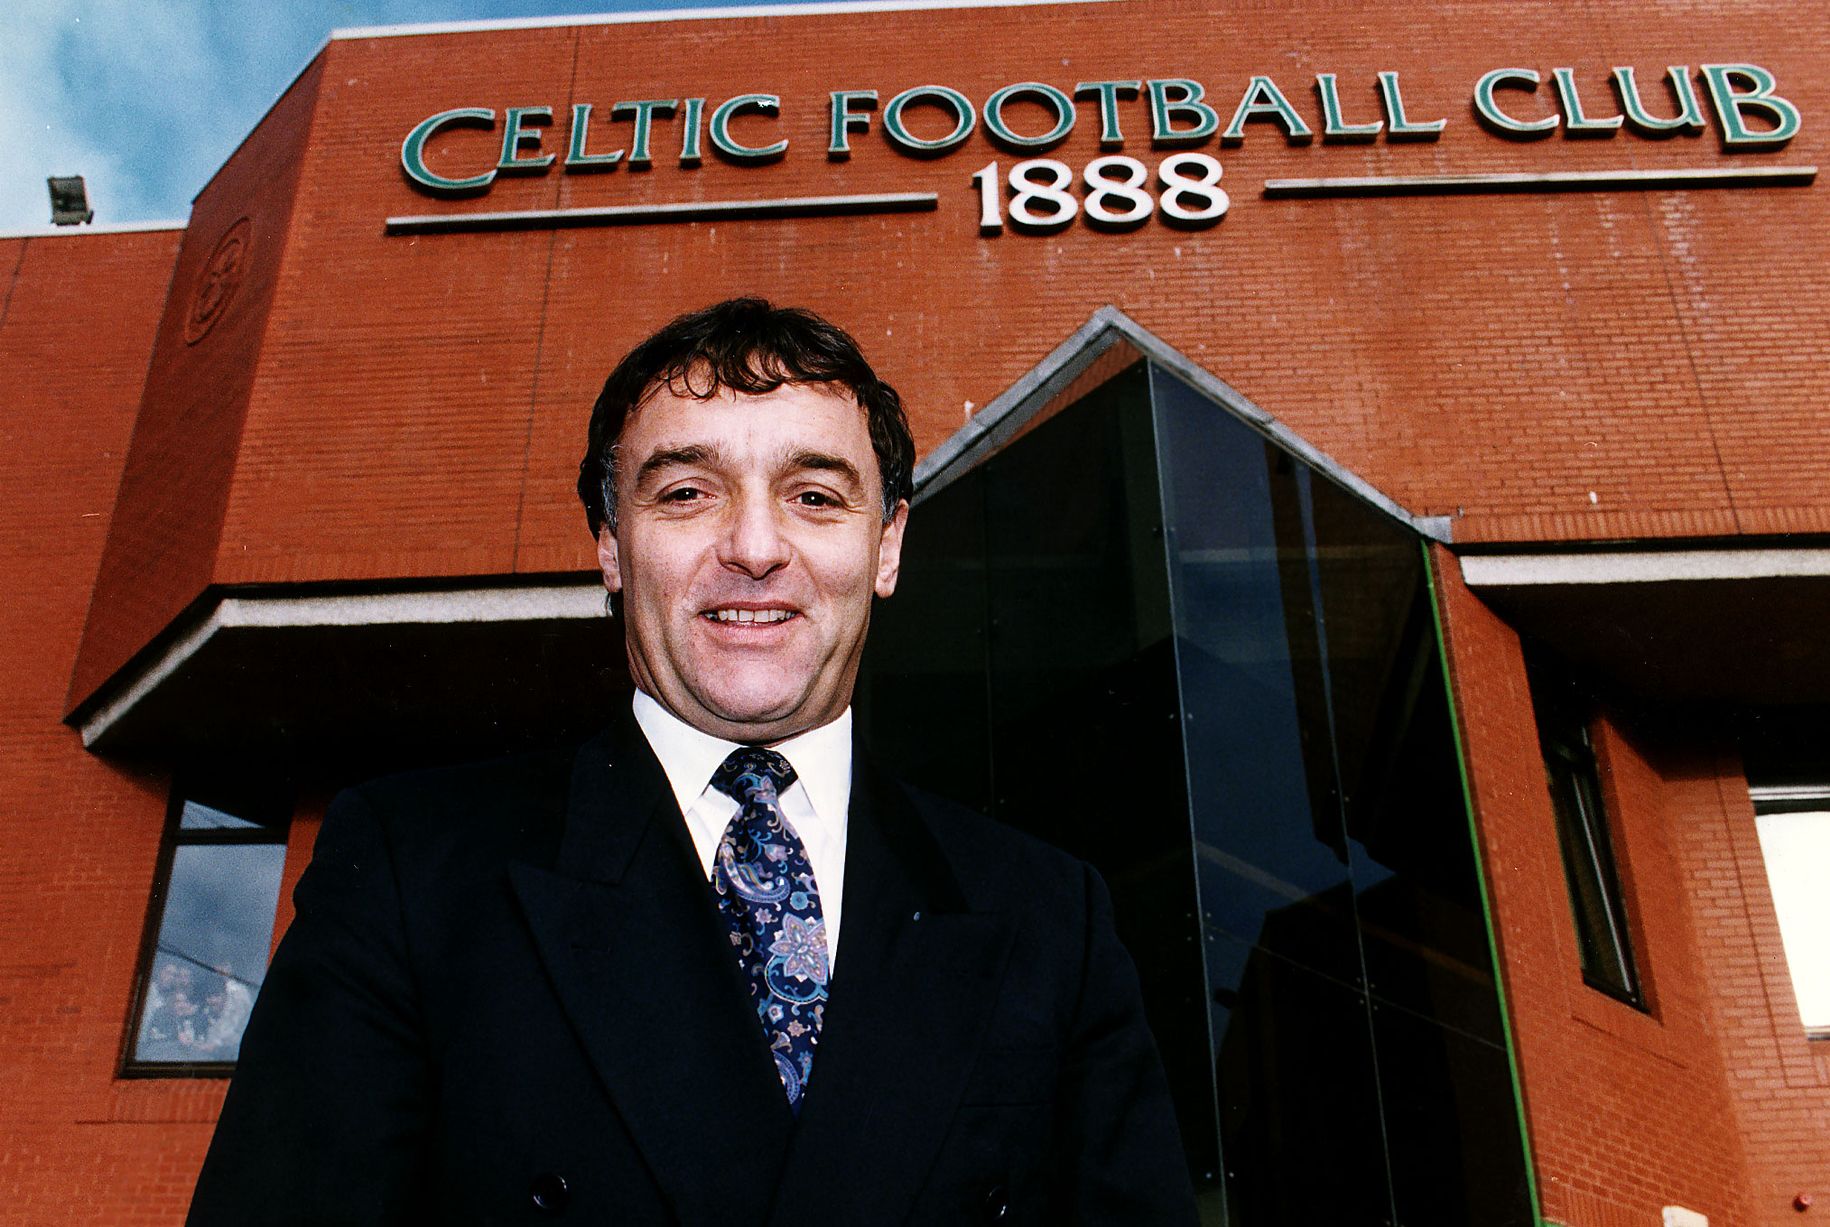 Celtic 1993-94 Home Kit